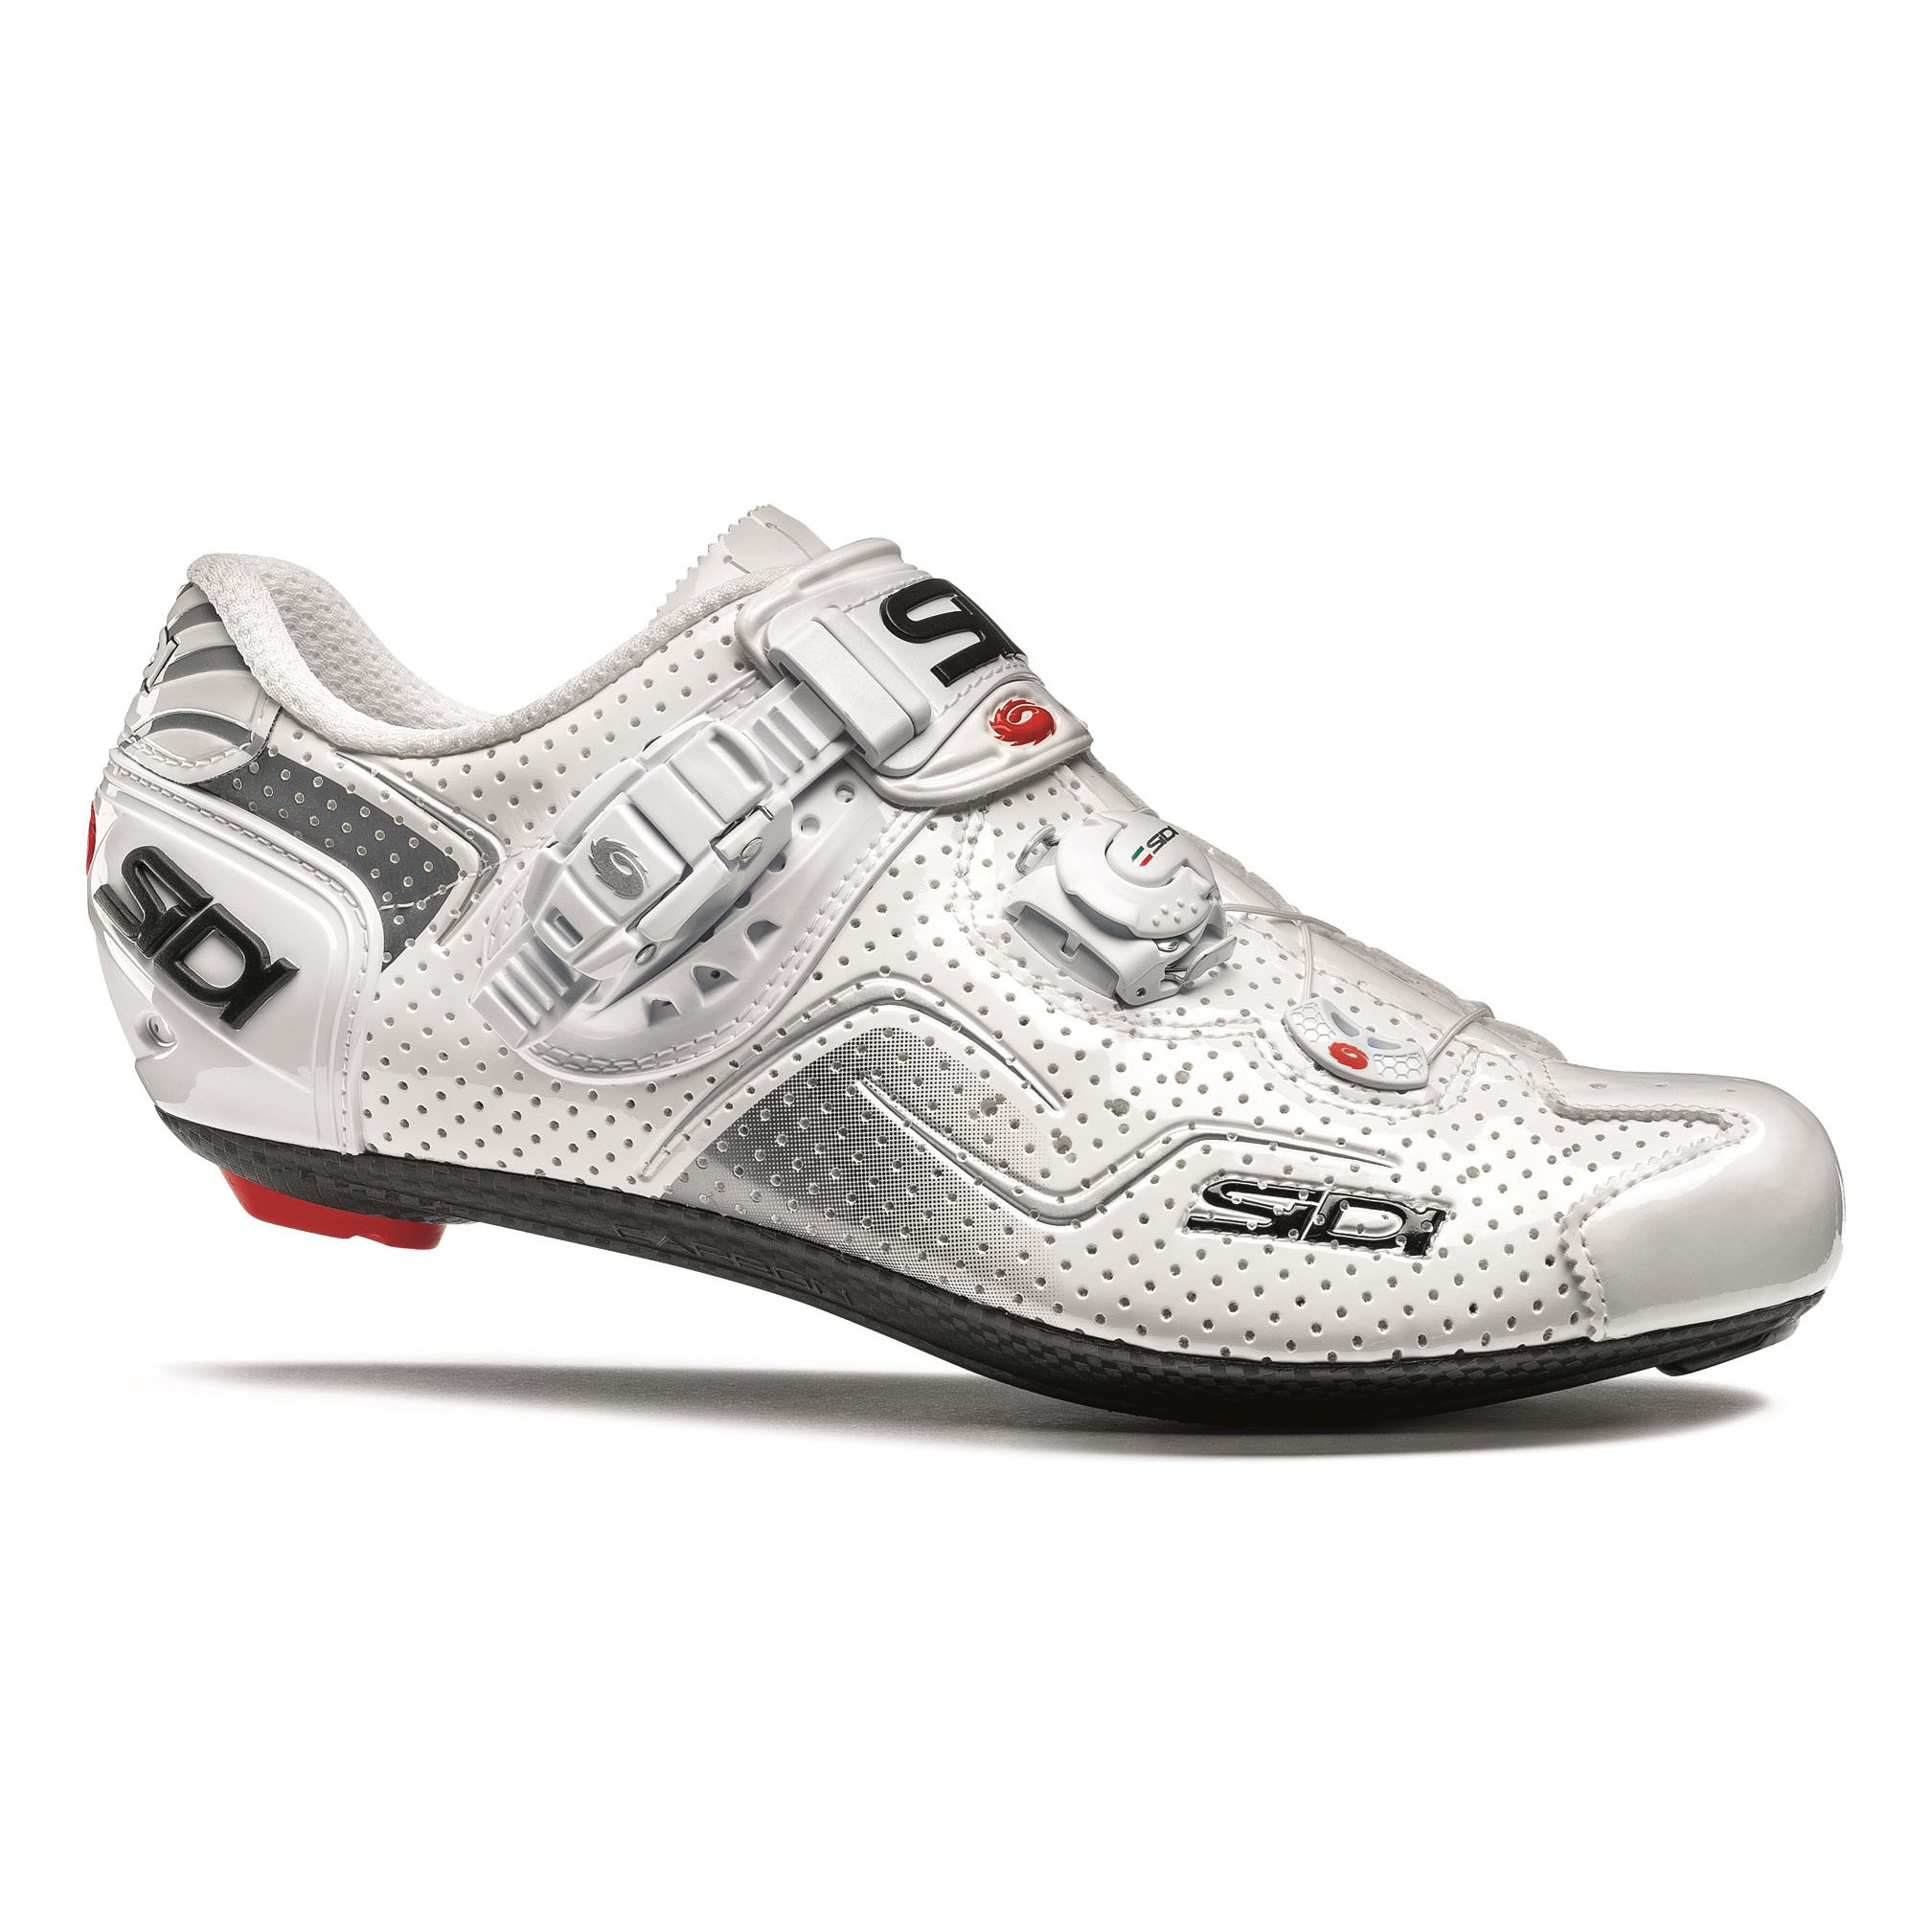 Sidi Kaos Air Carbon Men's Road Cycling Shoes White Size 45.5 | eBay